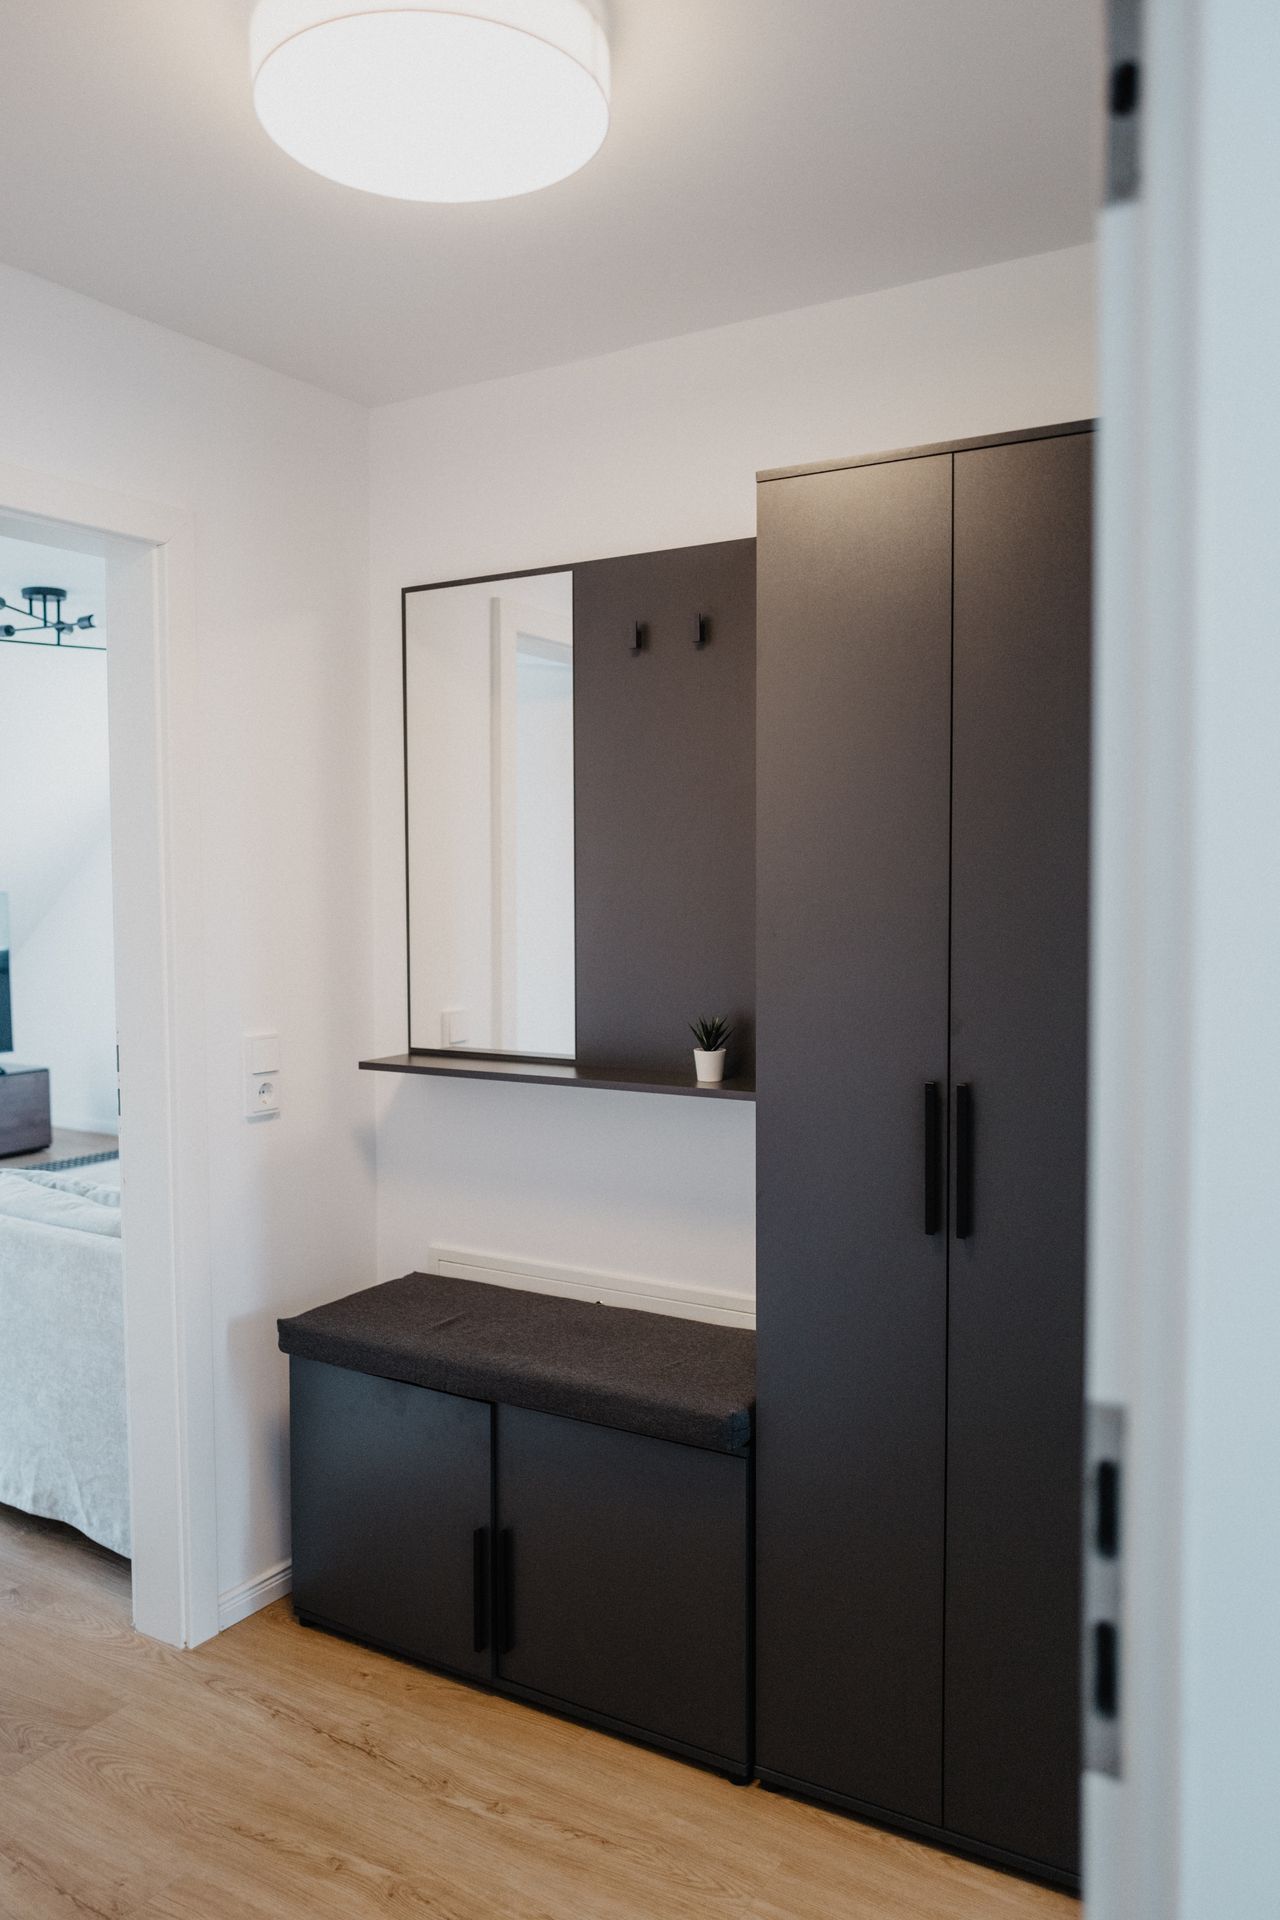 Neat & cozy apartment located in Hürth